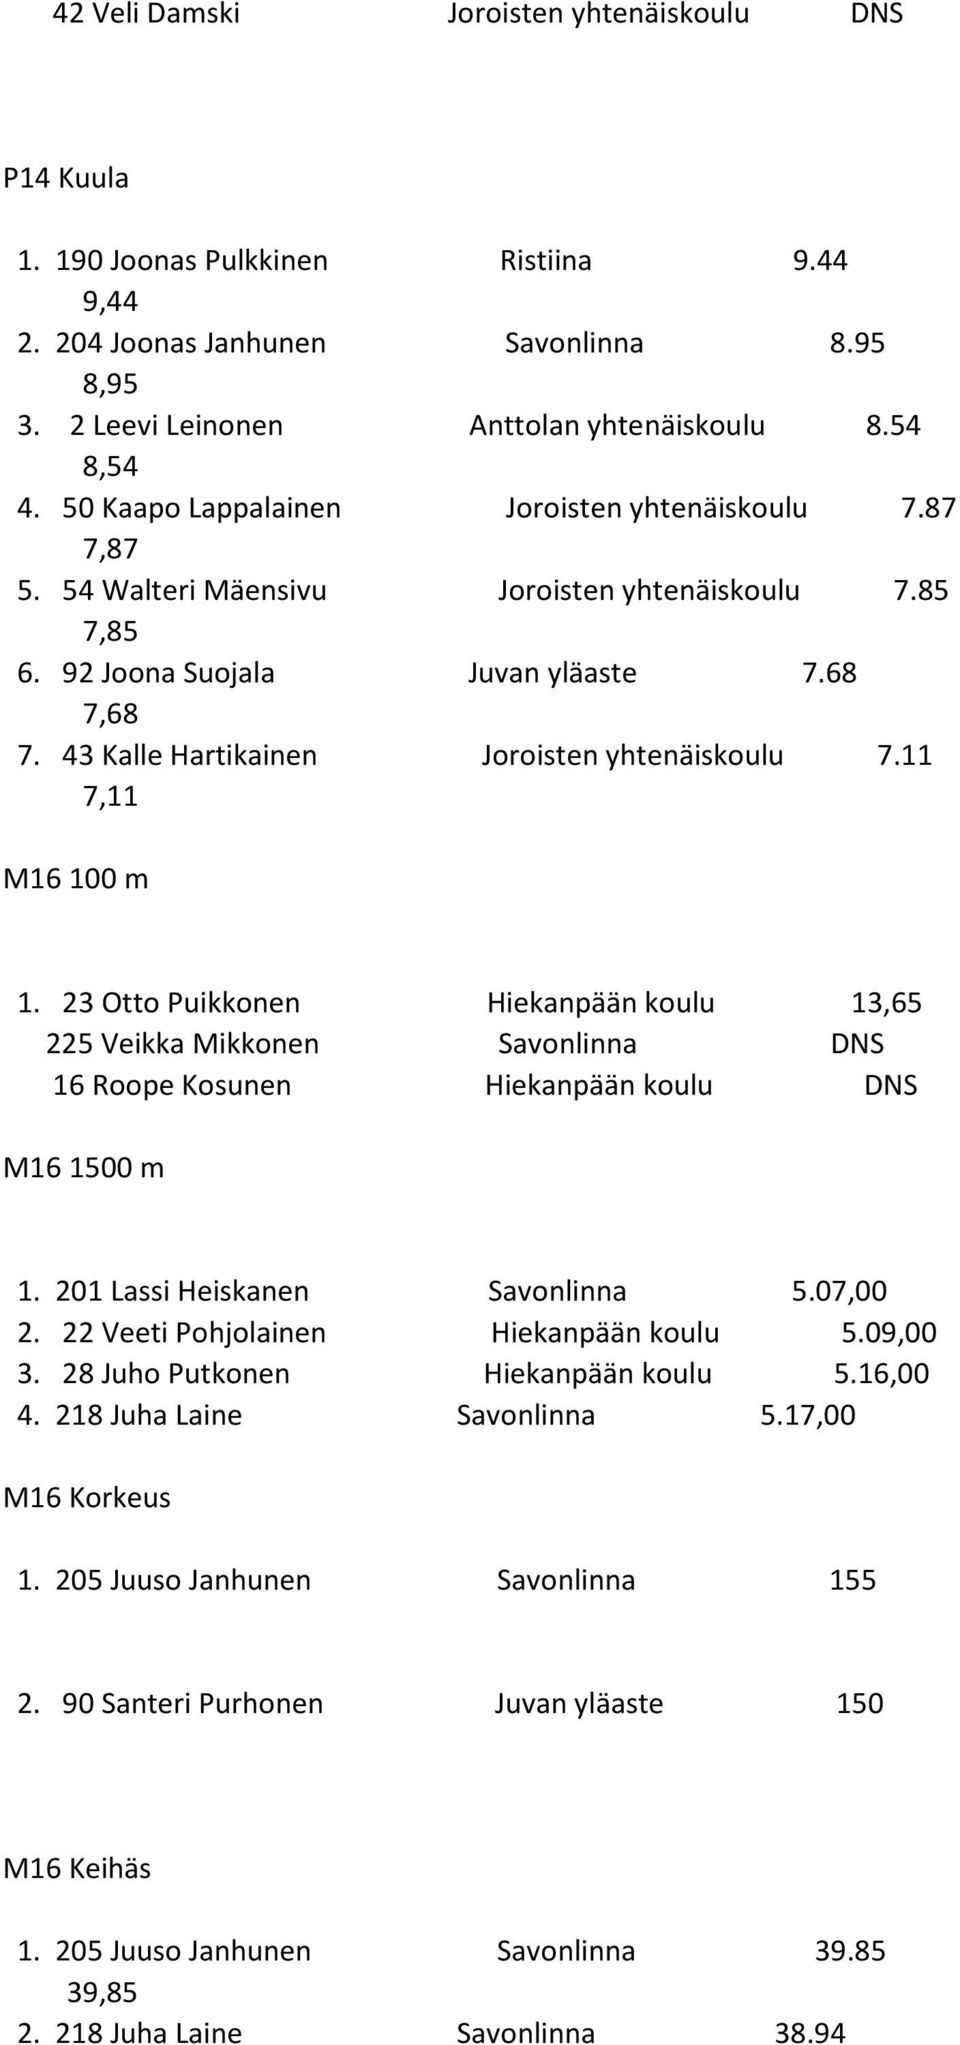 43 Kalle Hartikainen Joroisten yhtenäiskoulu 7.11 7,11 M16 100 m 1. 23 Otto Puikkonen Hiekanpään koulu 13,65 225 Veikka Mikkonen Savonlinna DNS 16 Roope Kosunen Hiekanpään koulu DNS M16 1500 m 1.